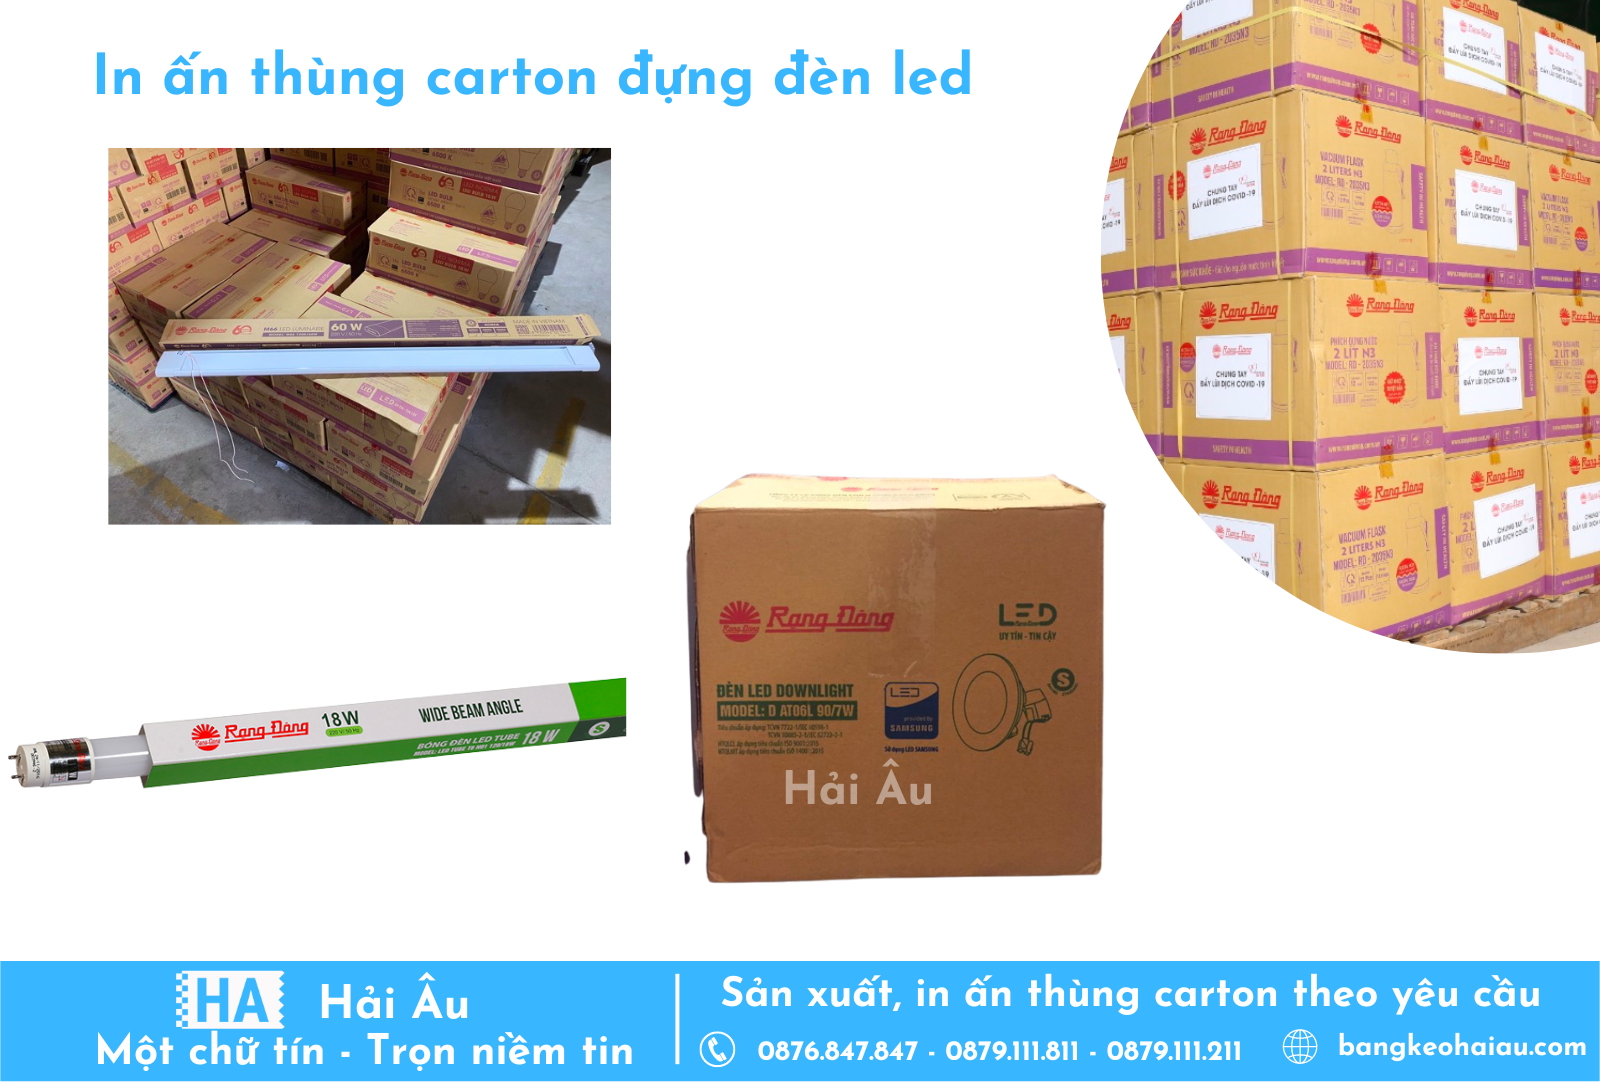 Chuyên cung cấp dịch vụ in thùng carton chất lượng tại xưởng in uy tín